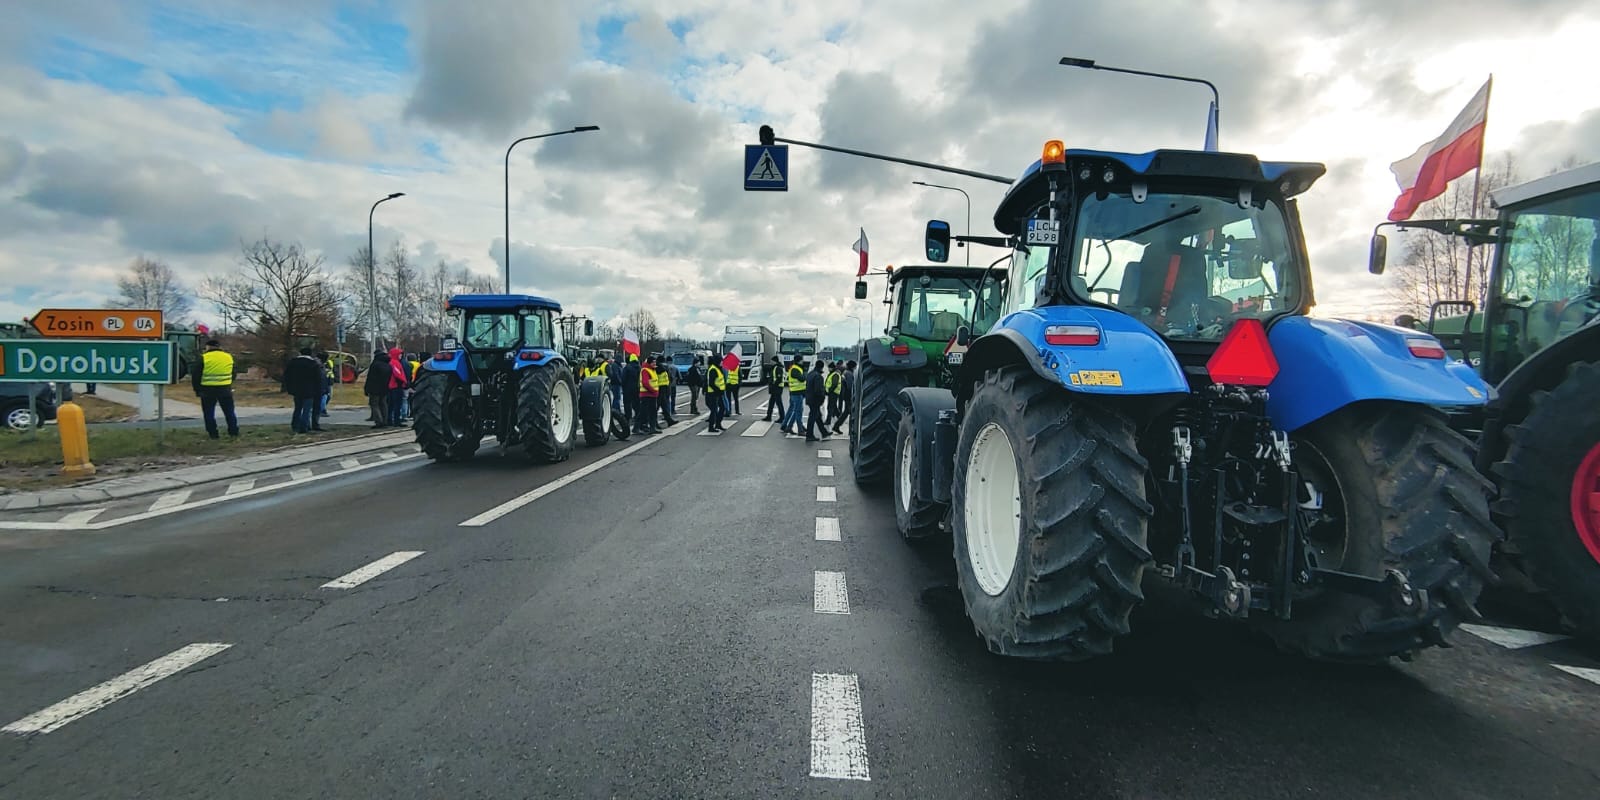 На польсько-українському кордоні знову протестують аграрії. Перевізників попереджають про складнощі при перетині кордону